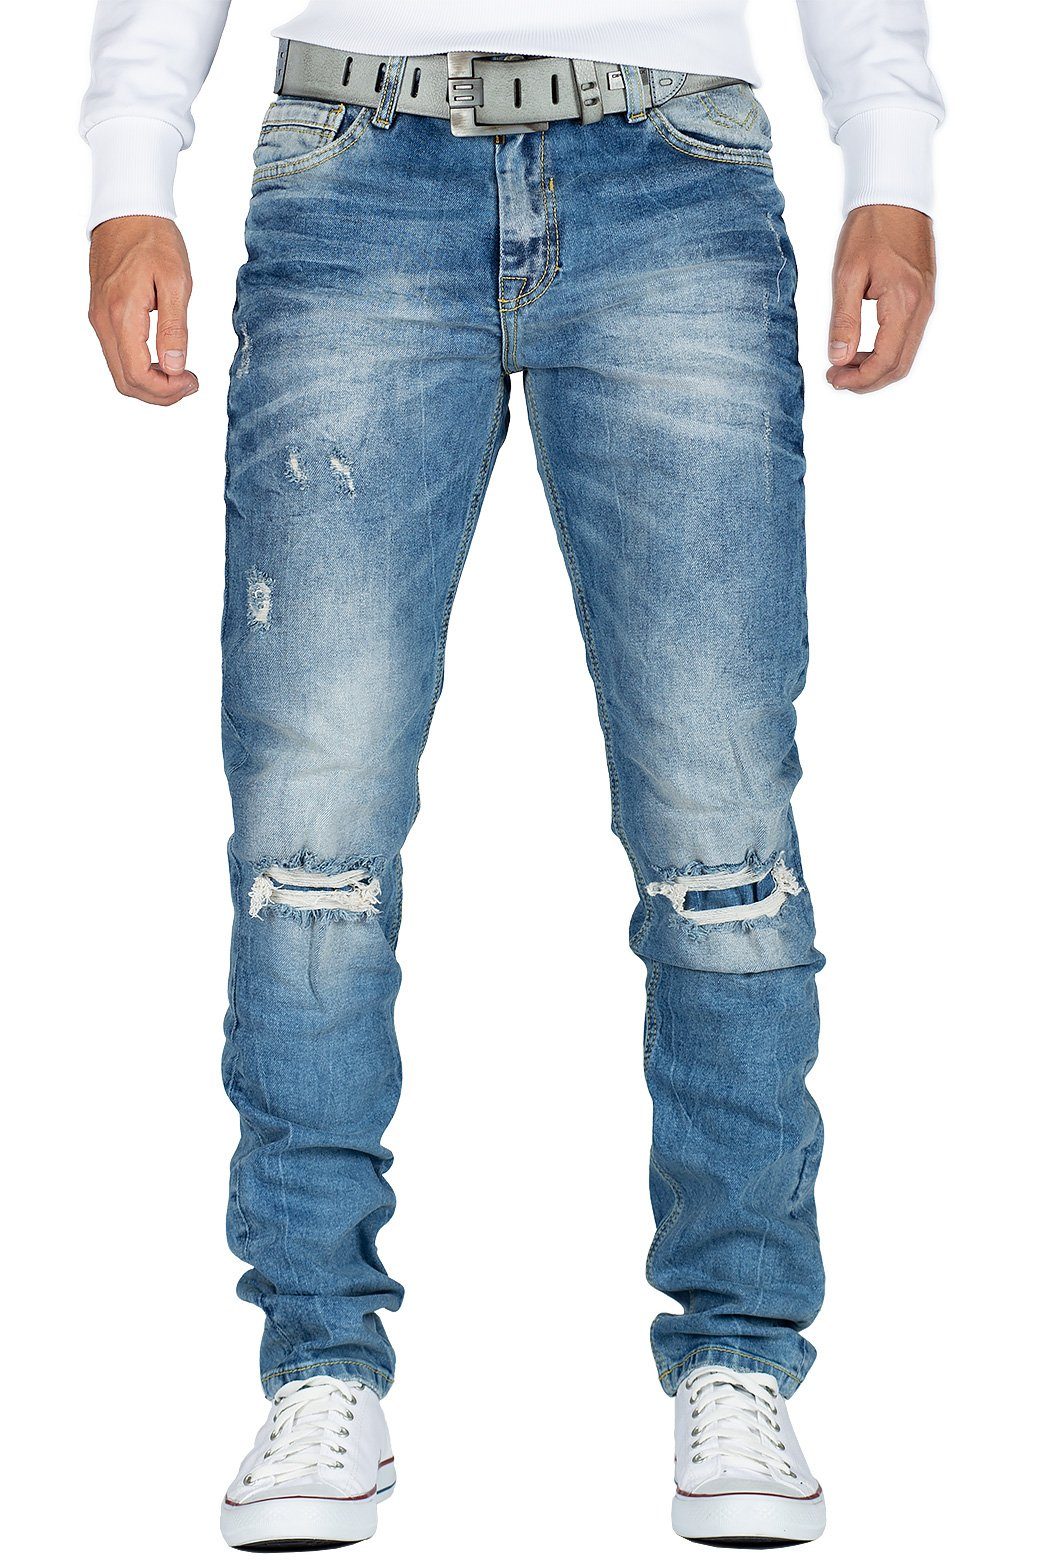 Cipo & Baxx Destroyed-Jeans »Cipo & Baxx Herren Jeans Hose BA-CD428 slim  fit« mit Desttoyed-Effekten und verstärkten Knielöchern online kaufen | OTTO